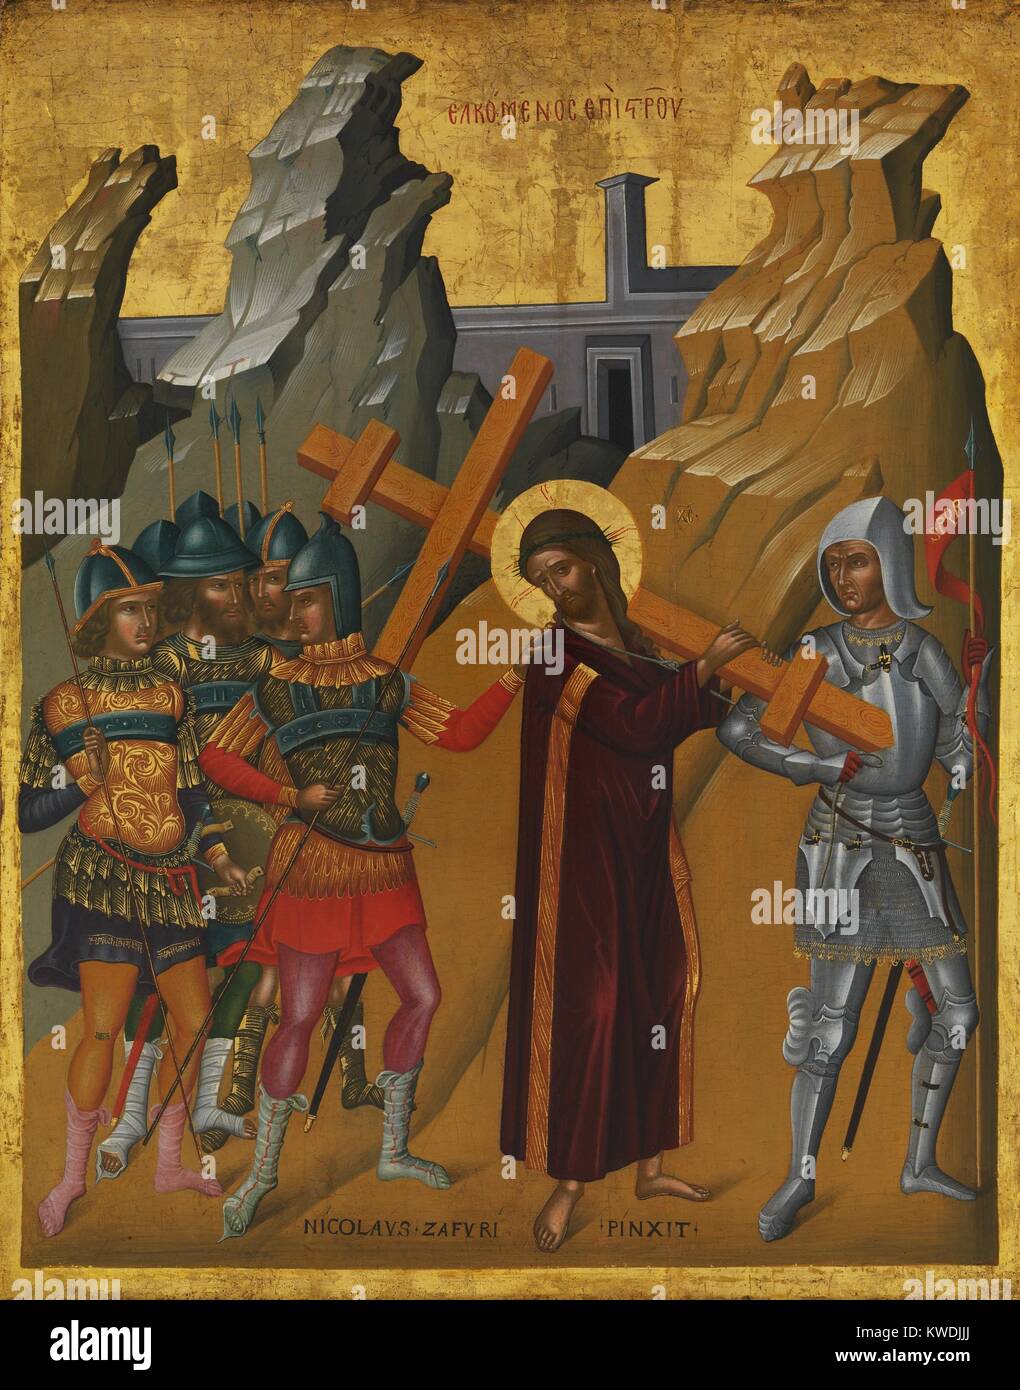 Cristo, llevando la cruz, por Nicolaos Tzafouris, 1475-99, bizantino, el cretense de pintura al óleo. Rodeados por soldados, Cristo lleva la cruz en el Gólgota. La obra es un híbrido del griego bizantino y el estilo del Renacimiento temprano italiano (BSLOC 2017 16 54). Foto de stock